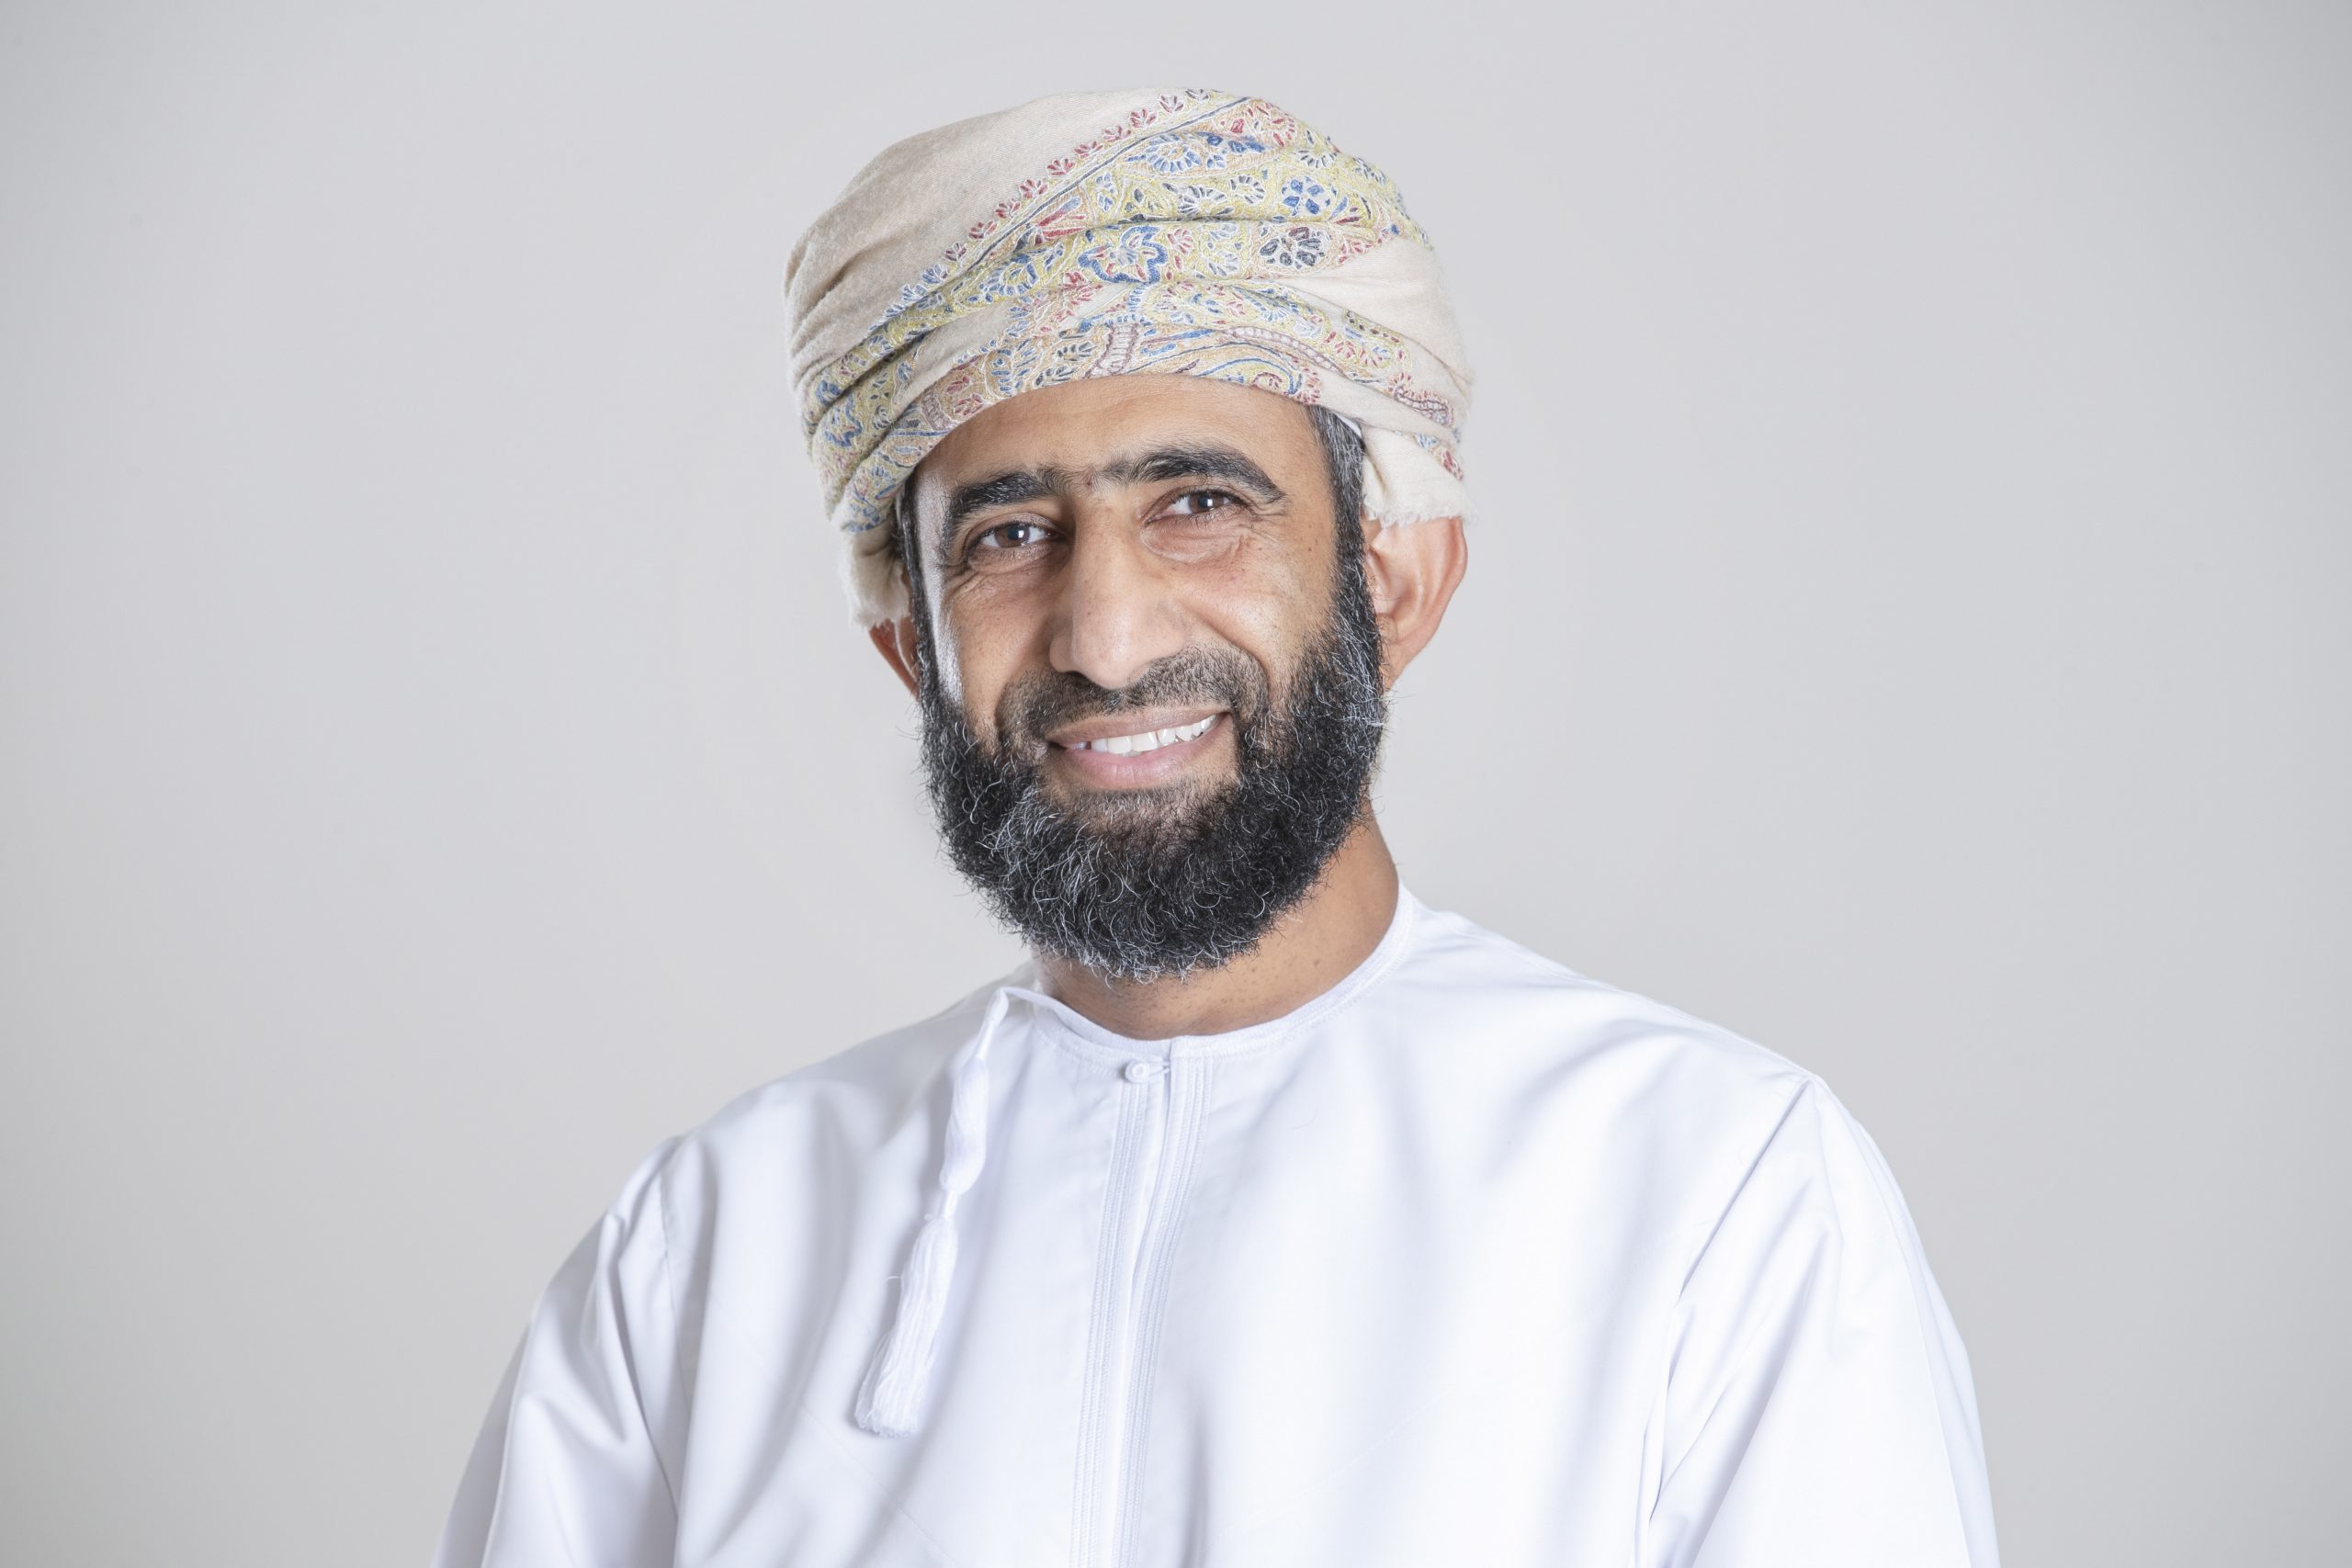 المدير العام لشركة هيدروجين عمان "هيدروم" المهندس عبد العزيز الشيذاني يتحدث عن صناعة الهيدروجين الأخضر في سلطنة عمان